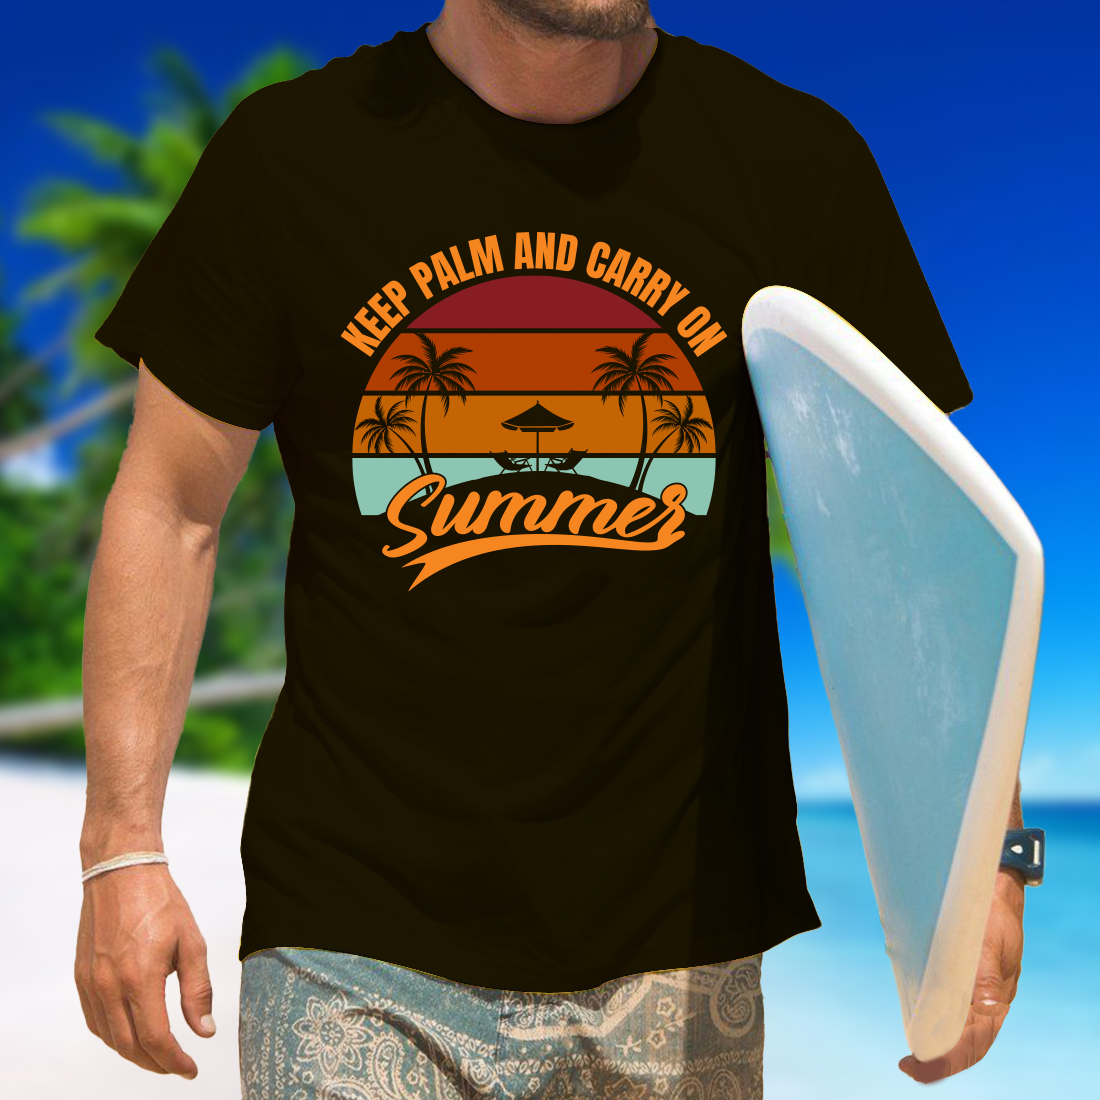 sunset t shirt design 8 108